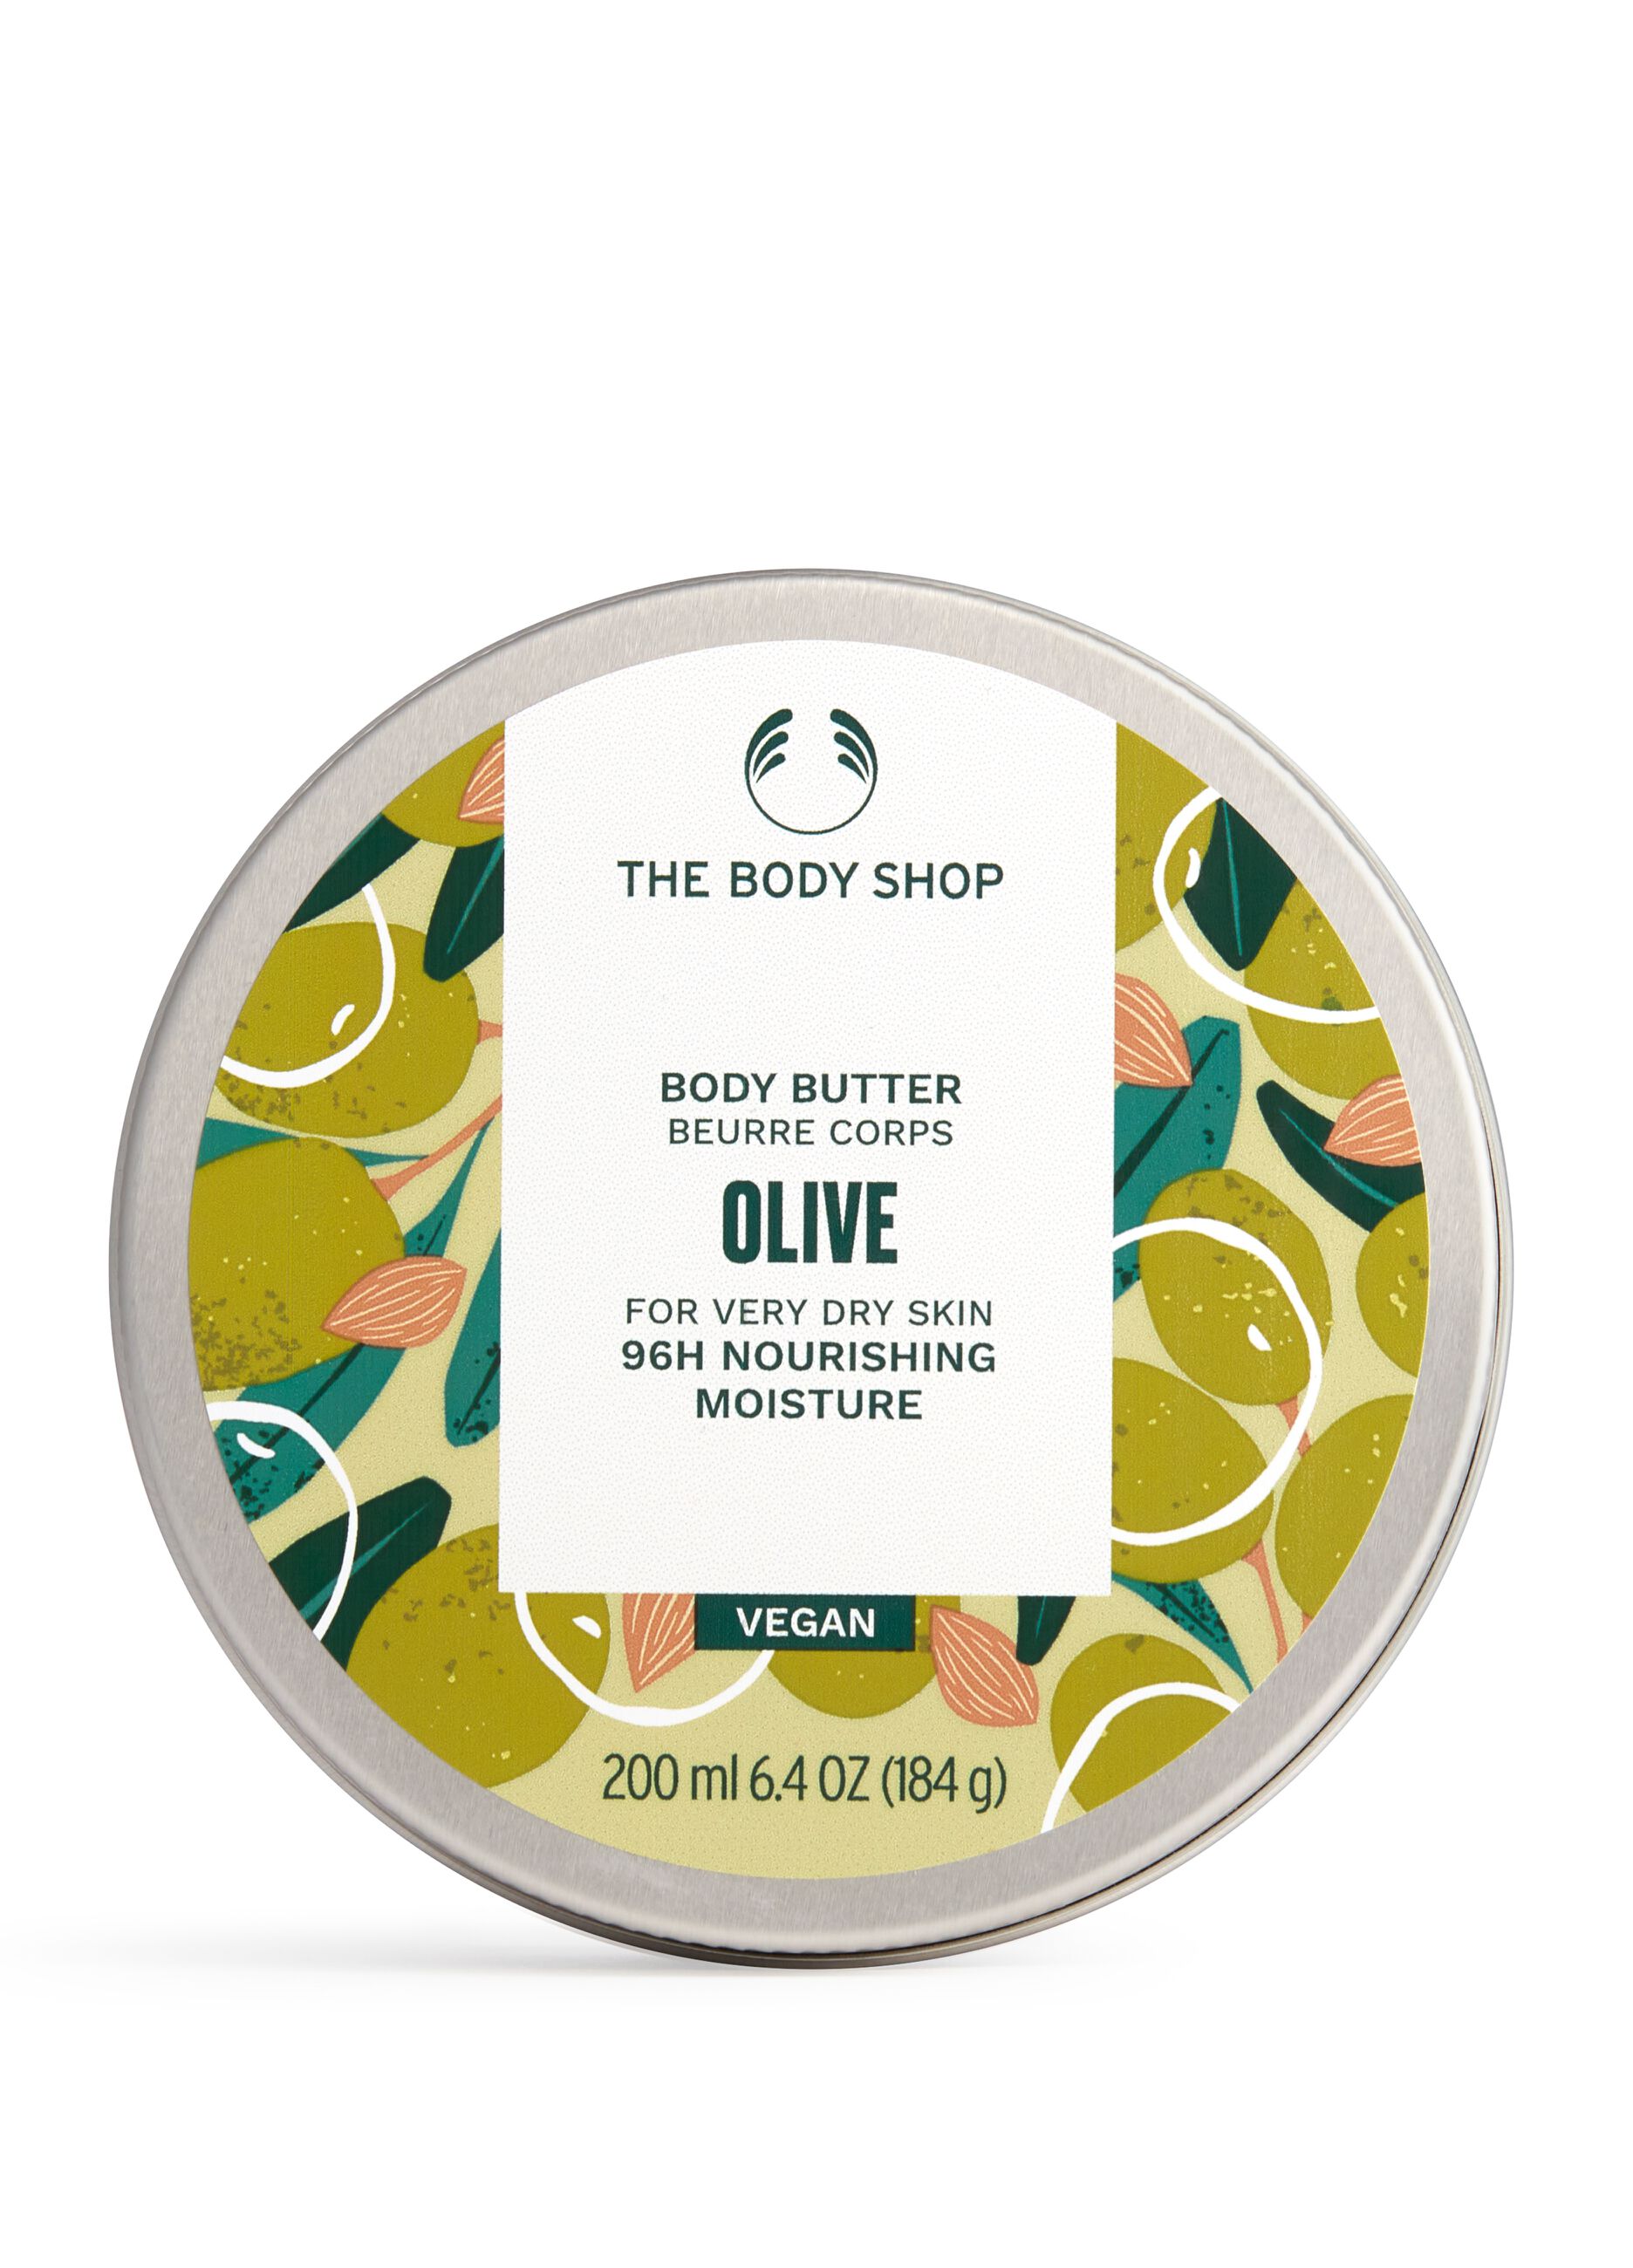 Burro per il corpo all'olio di oliva 200ml The Body Shop